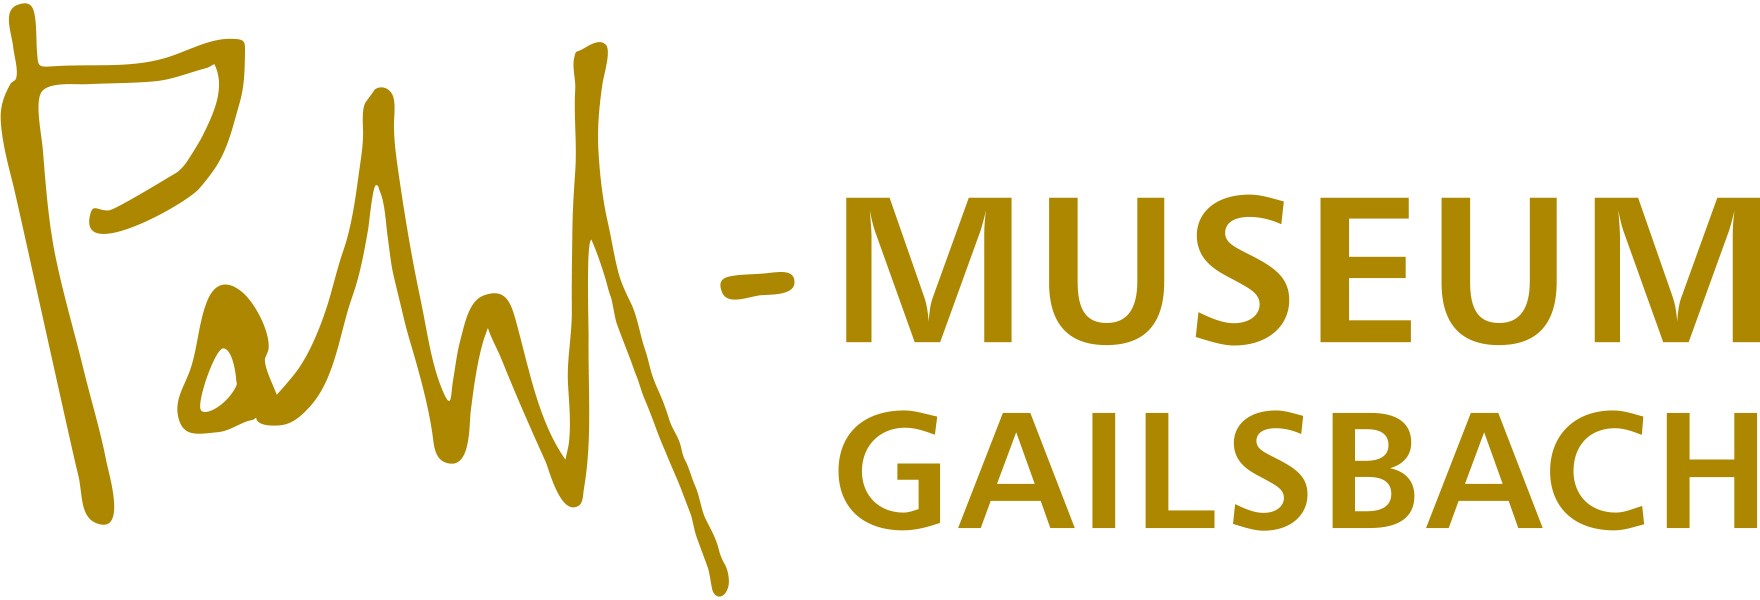  Zeigt das Logo des Pahl-Museums in geschwunger Schrift in goldener Farbe 